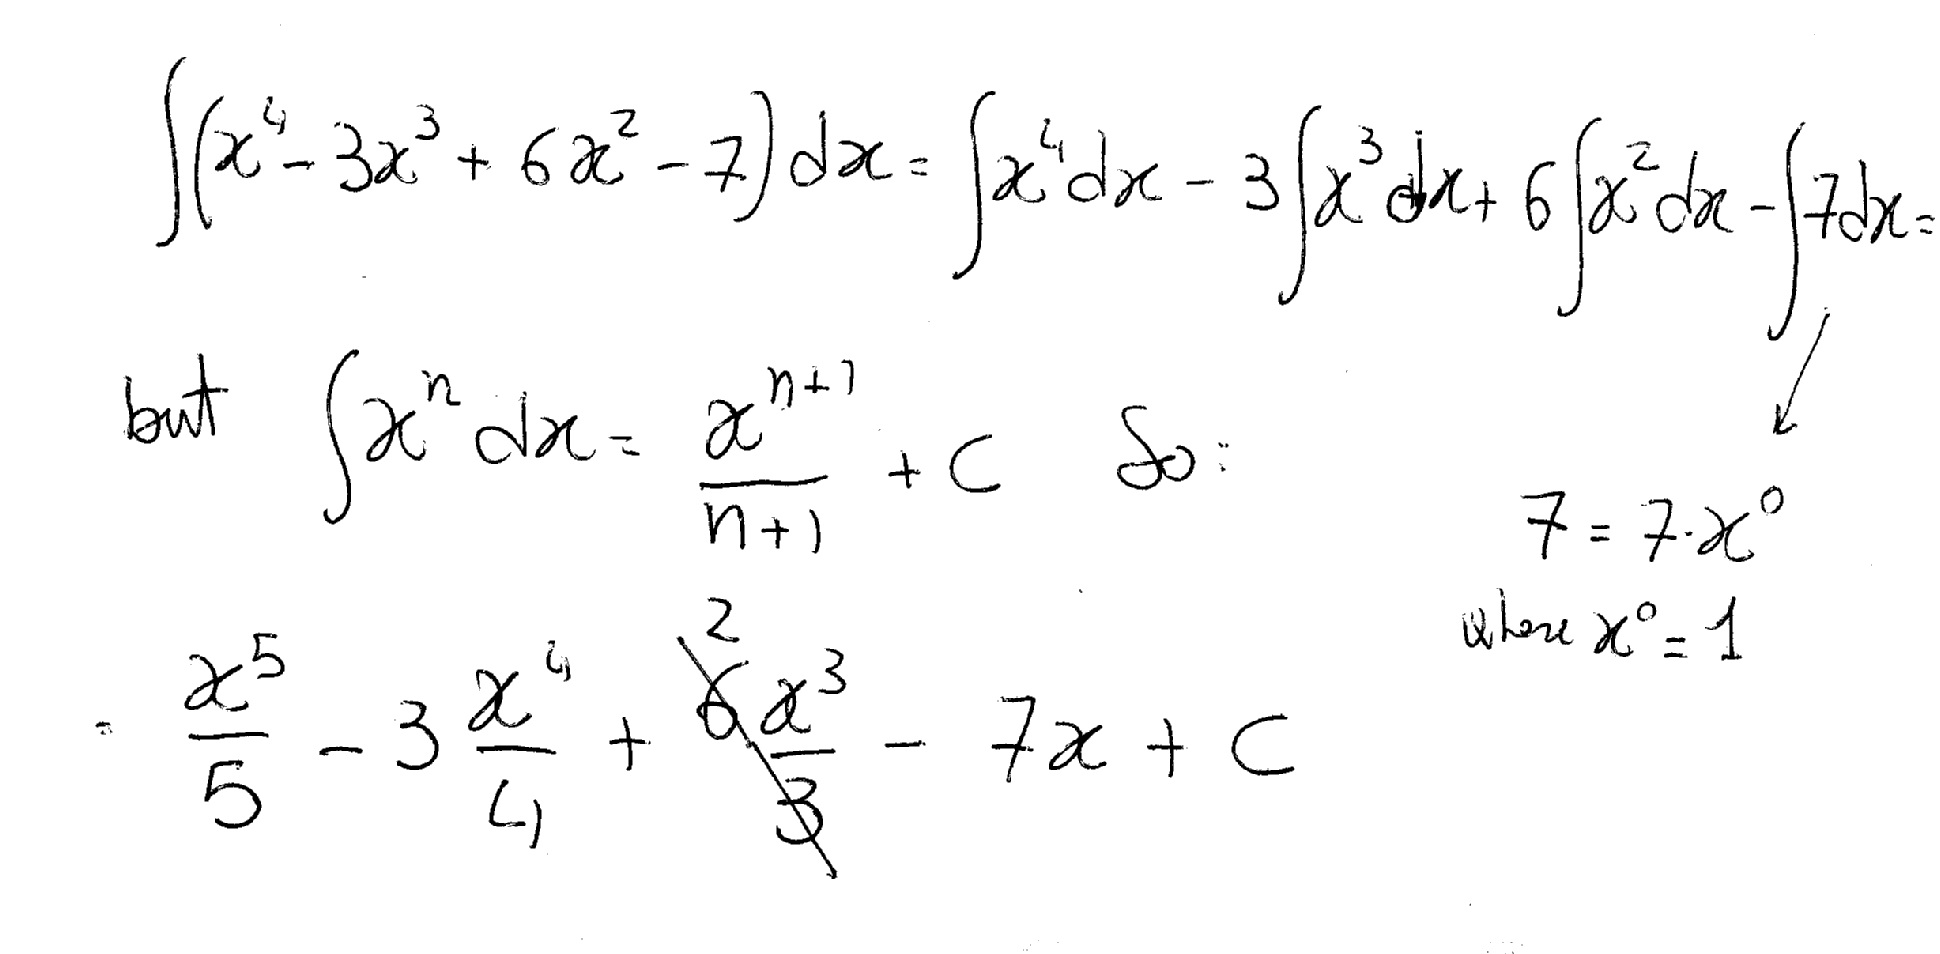 Найти интеграл dx 3x 2. Интеграл 4dx/(3-6x) ^6. Интегралы (2^x + 7^x)^2. 3dx/x+3 интеграл. Интеграл (7x+3) / (x:2-4x+5).